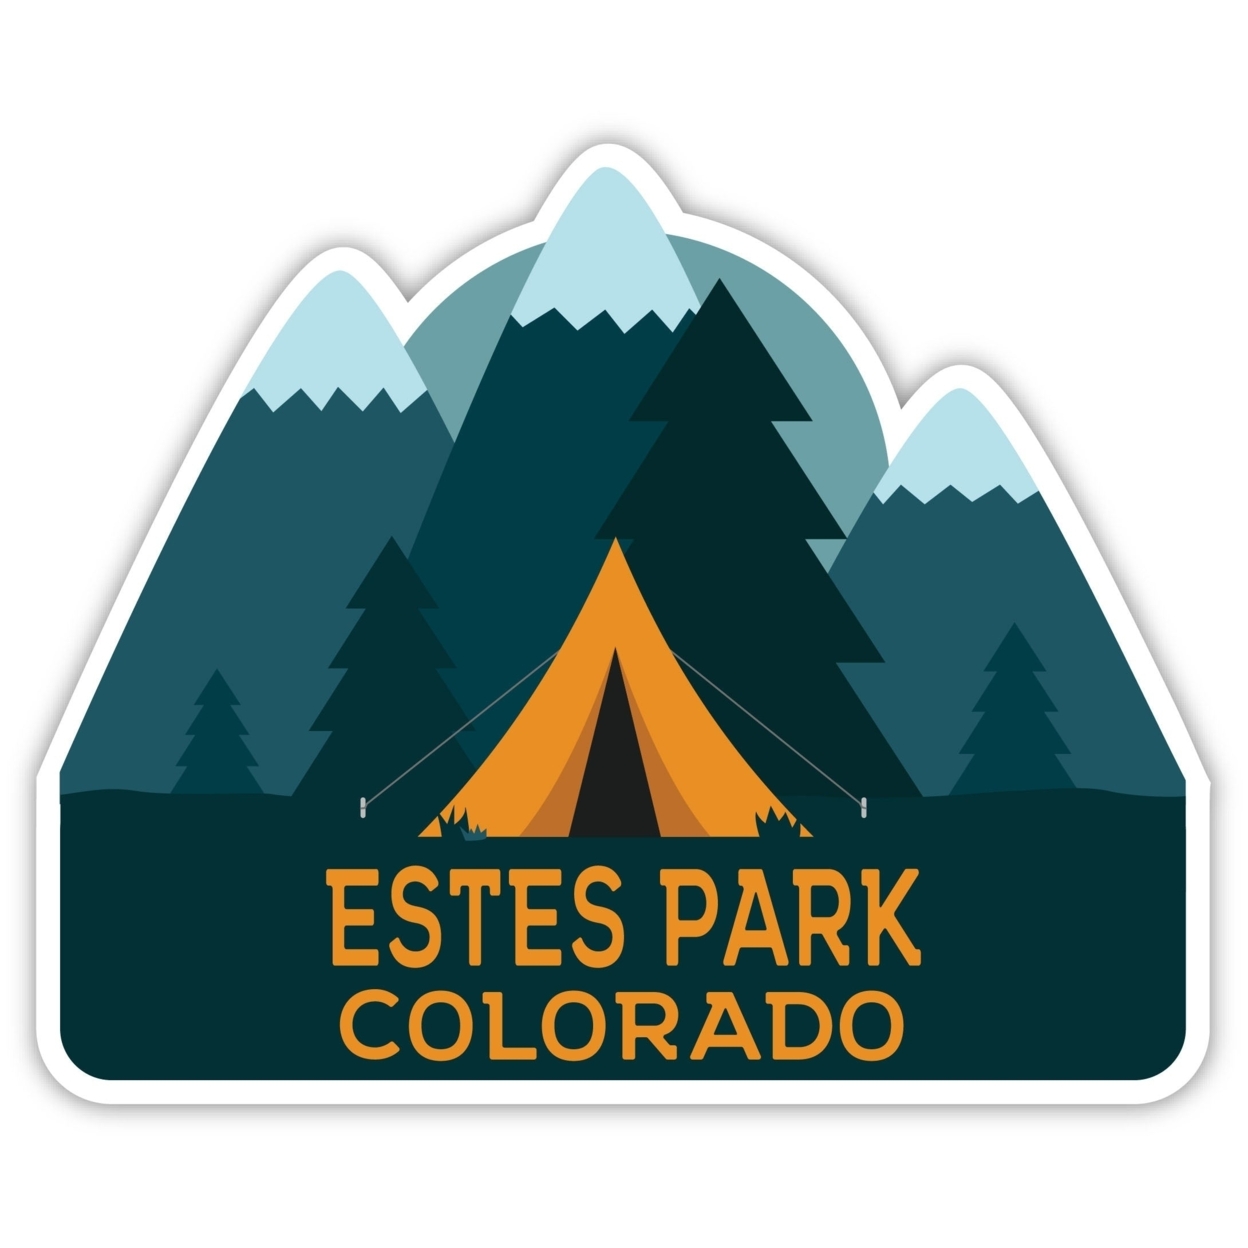 Estes Park Colorado Souvenir Decorative Stickers (Choose Theme And Size) - Single Unit, 6-Inch, Bear